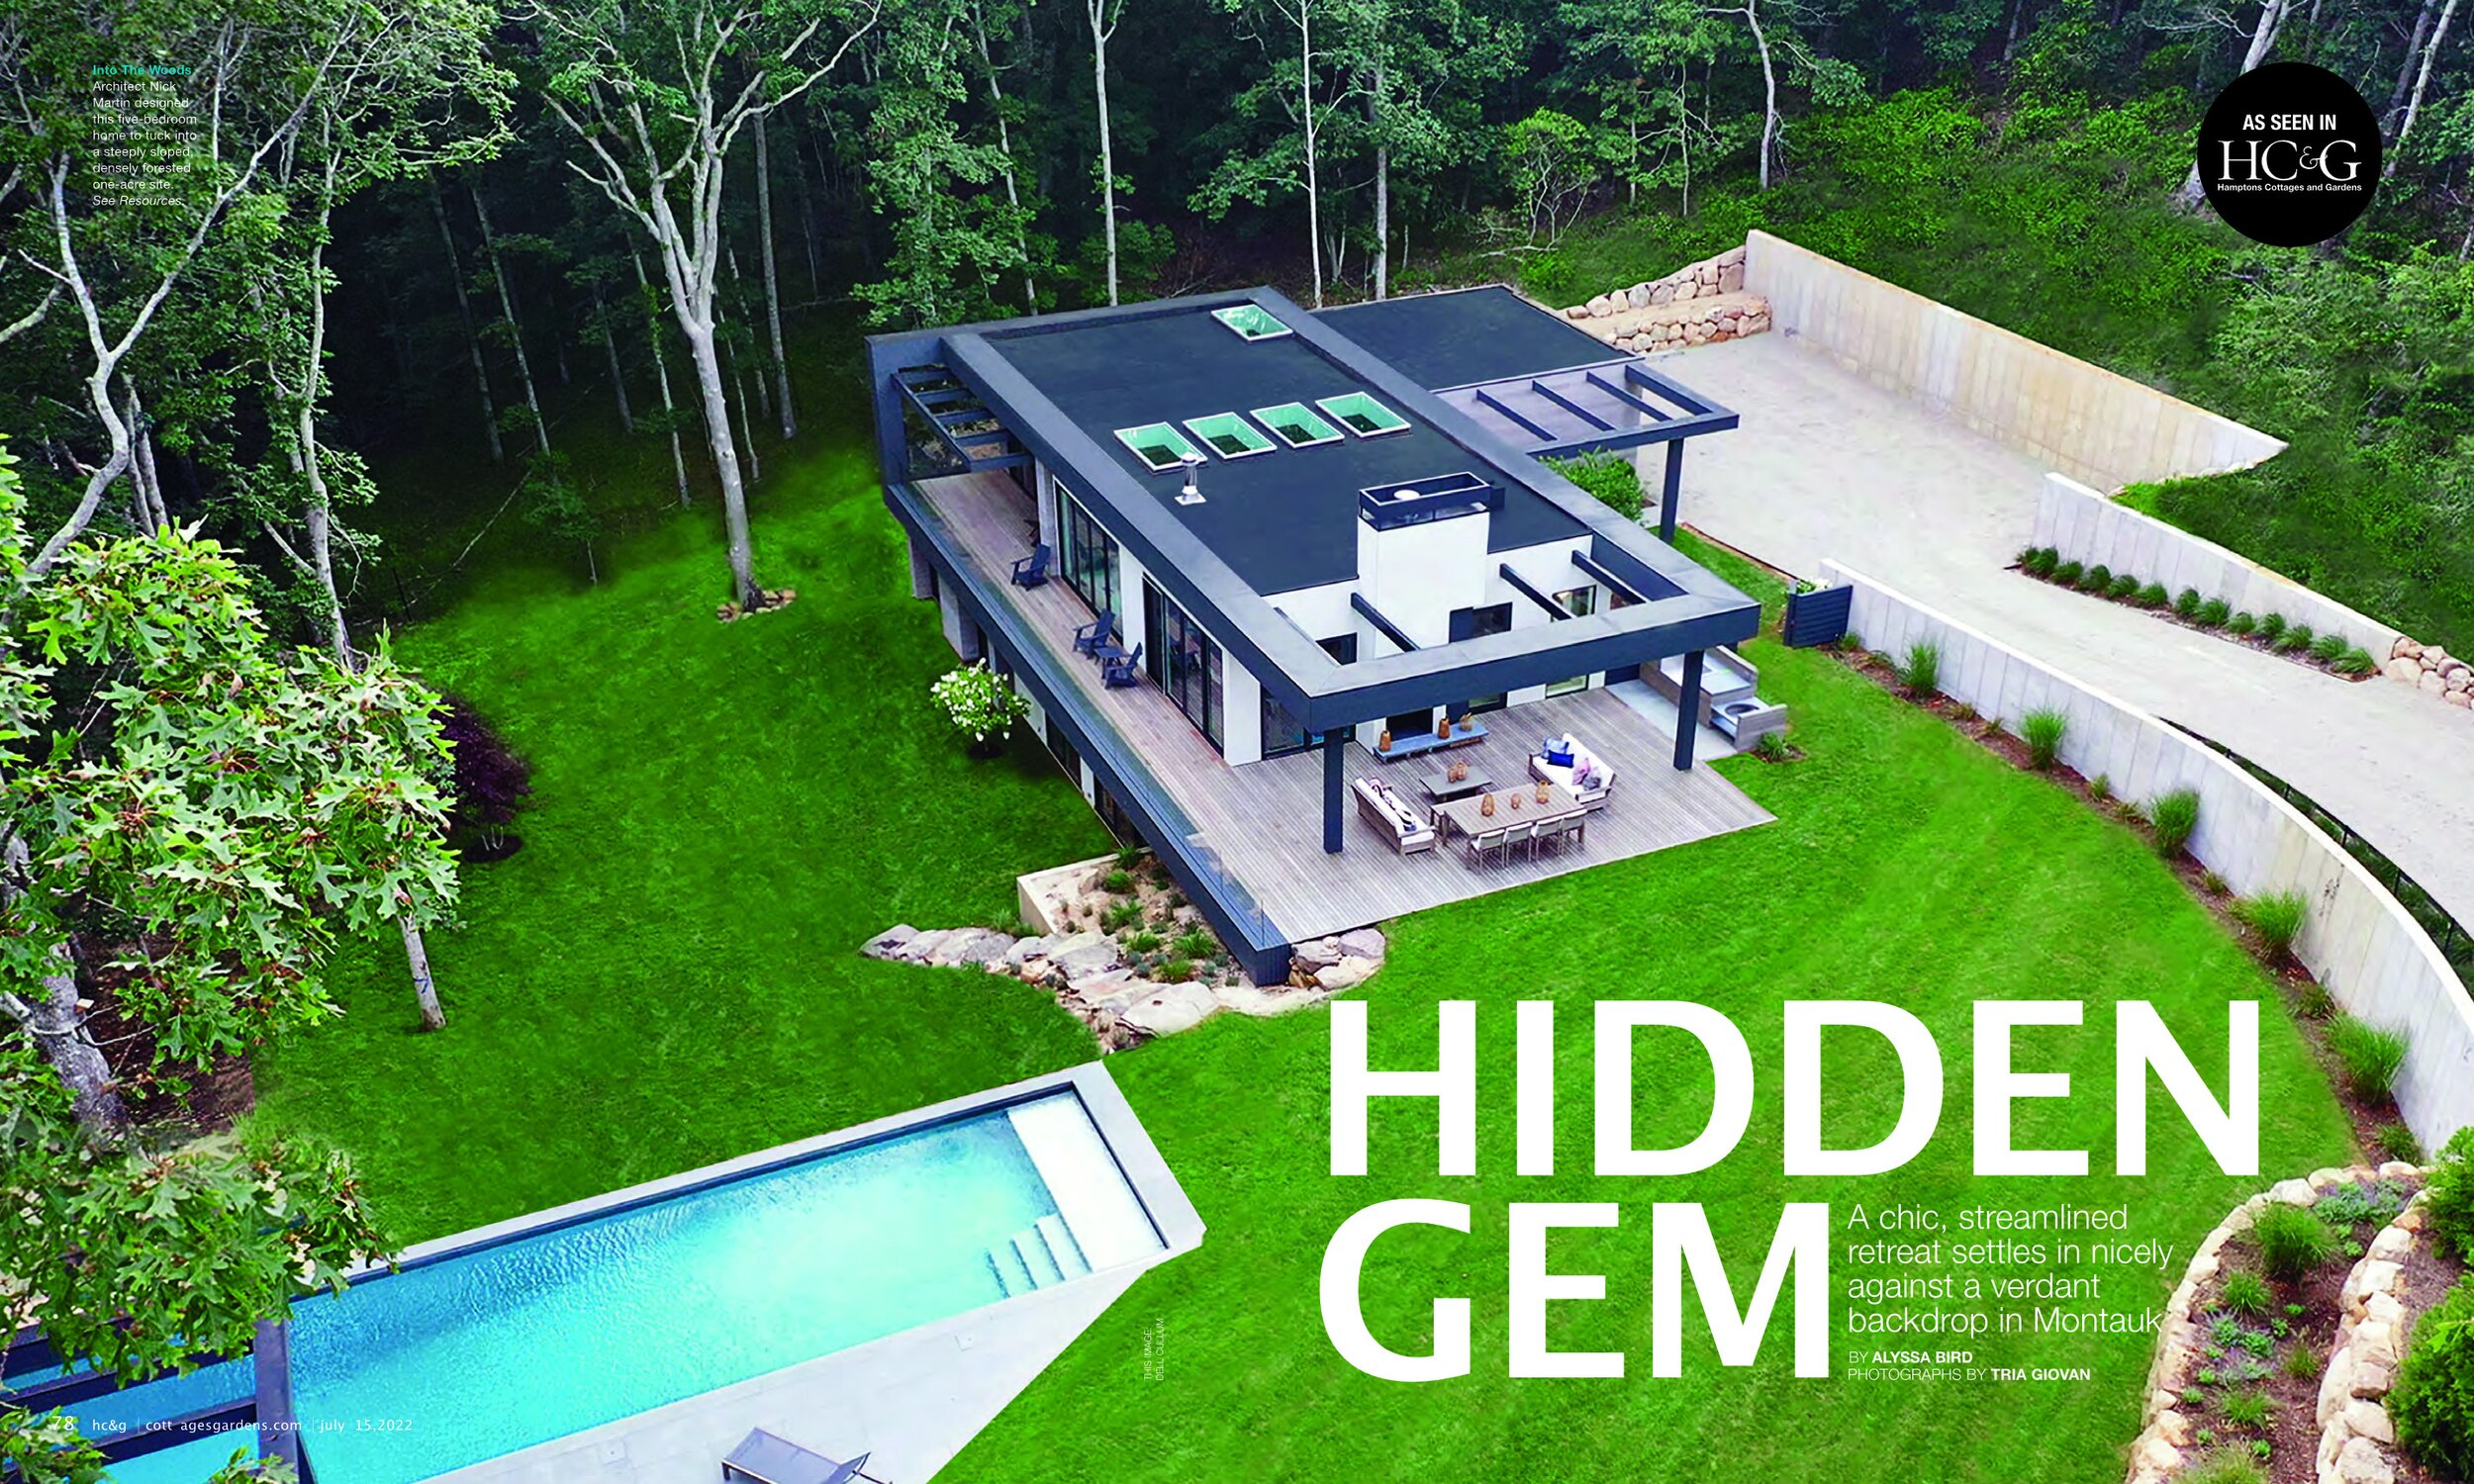 HC&G Hidden Gem H3 July 15 20223.jpg